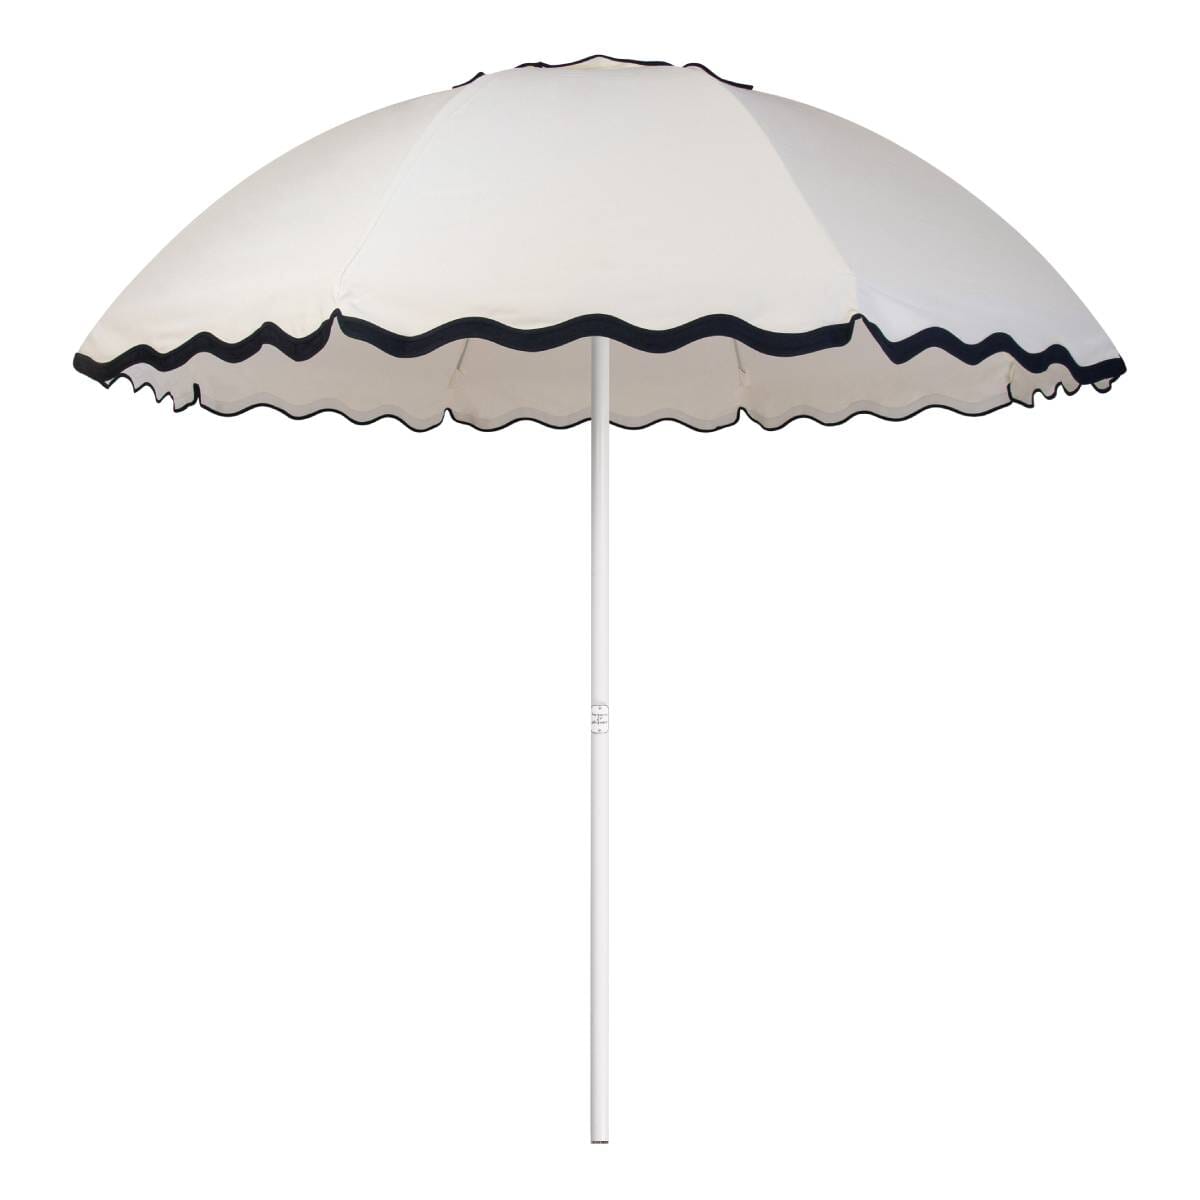 Studio image of rivie white patio umbrella